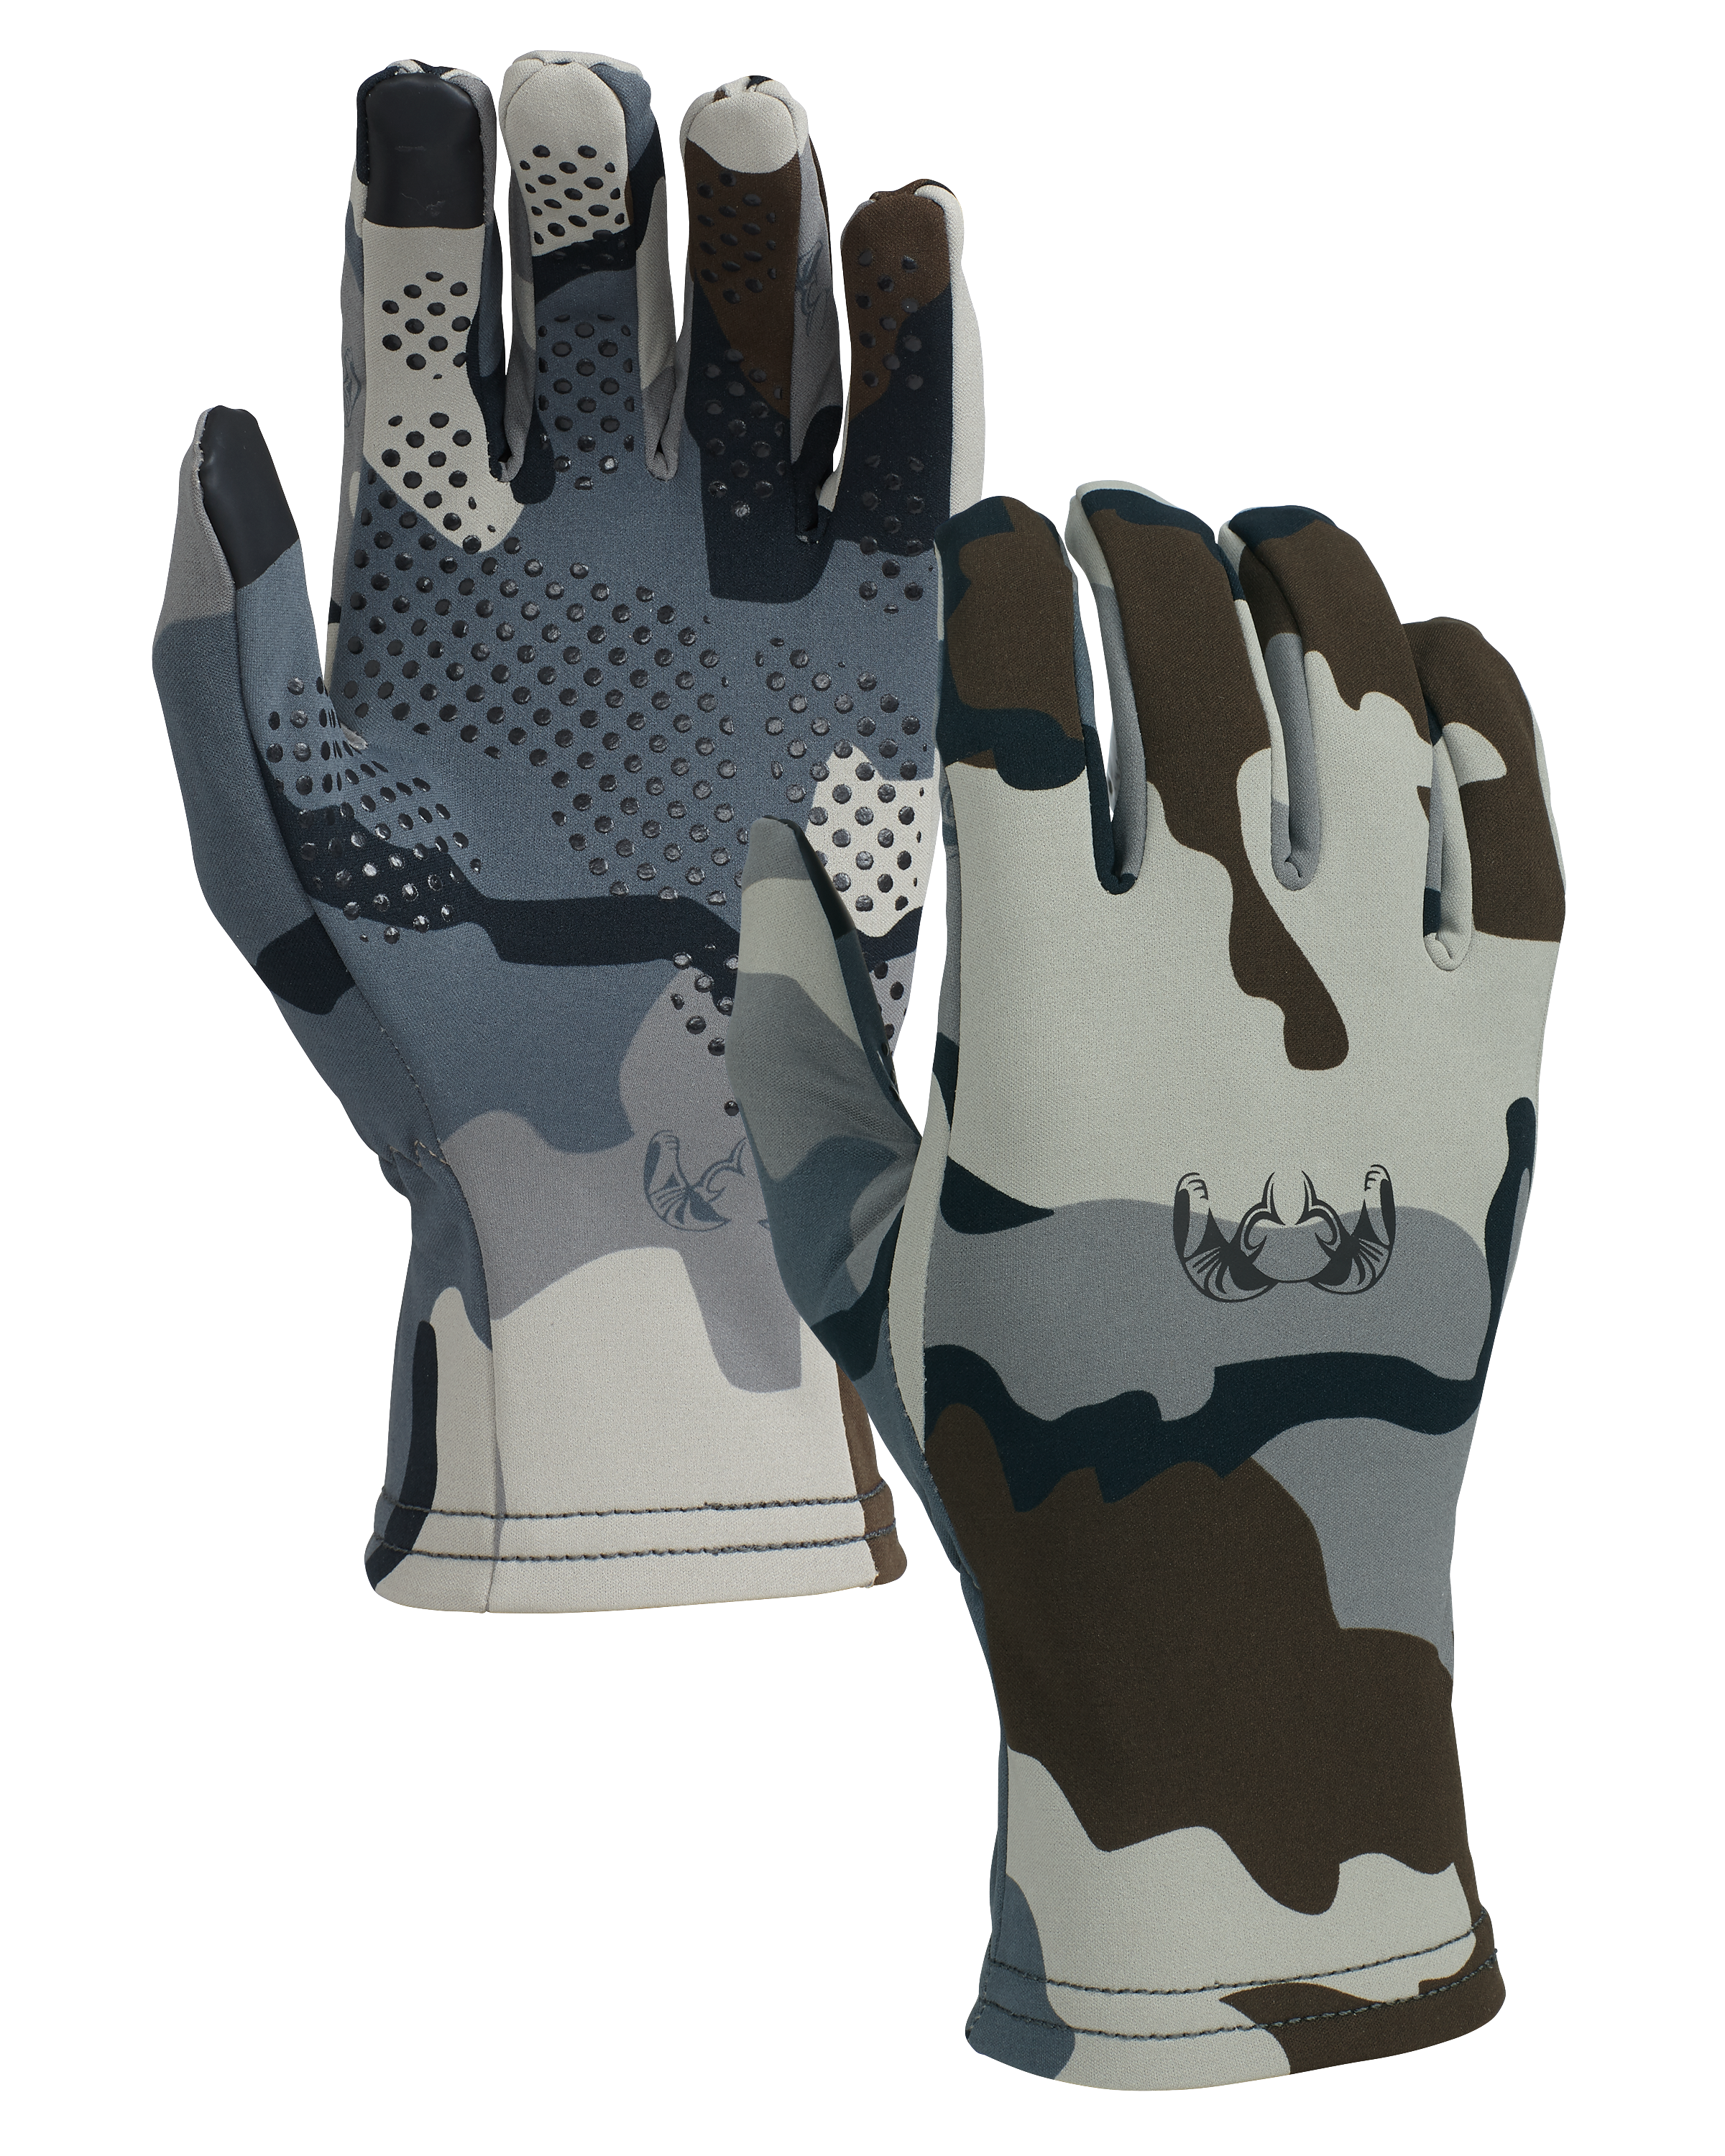 KUIU StrongFleece 220 Glove in Vias | Size XL